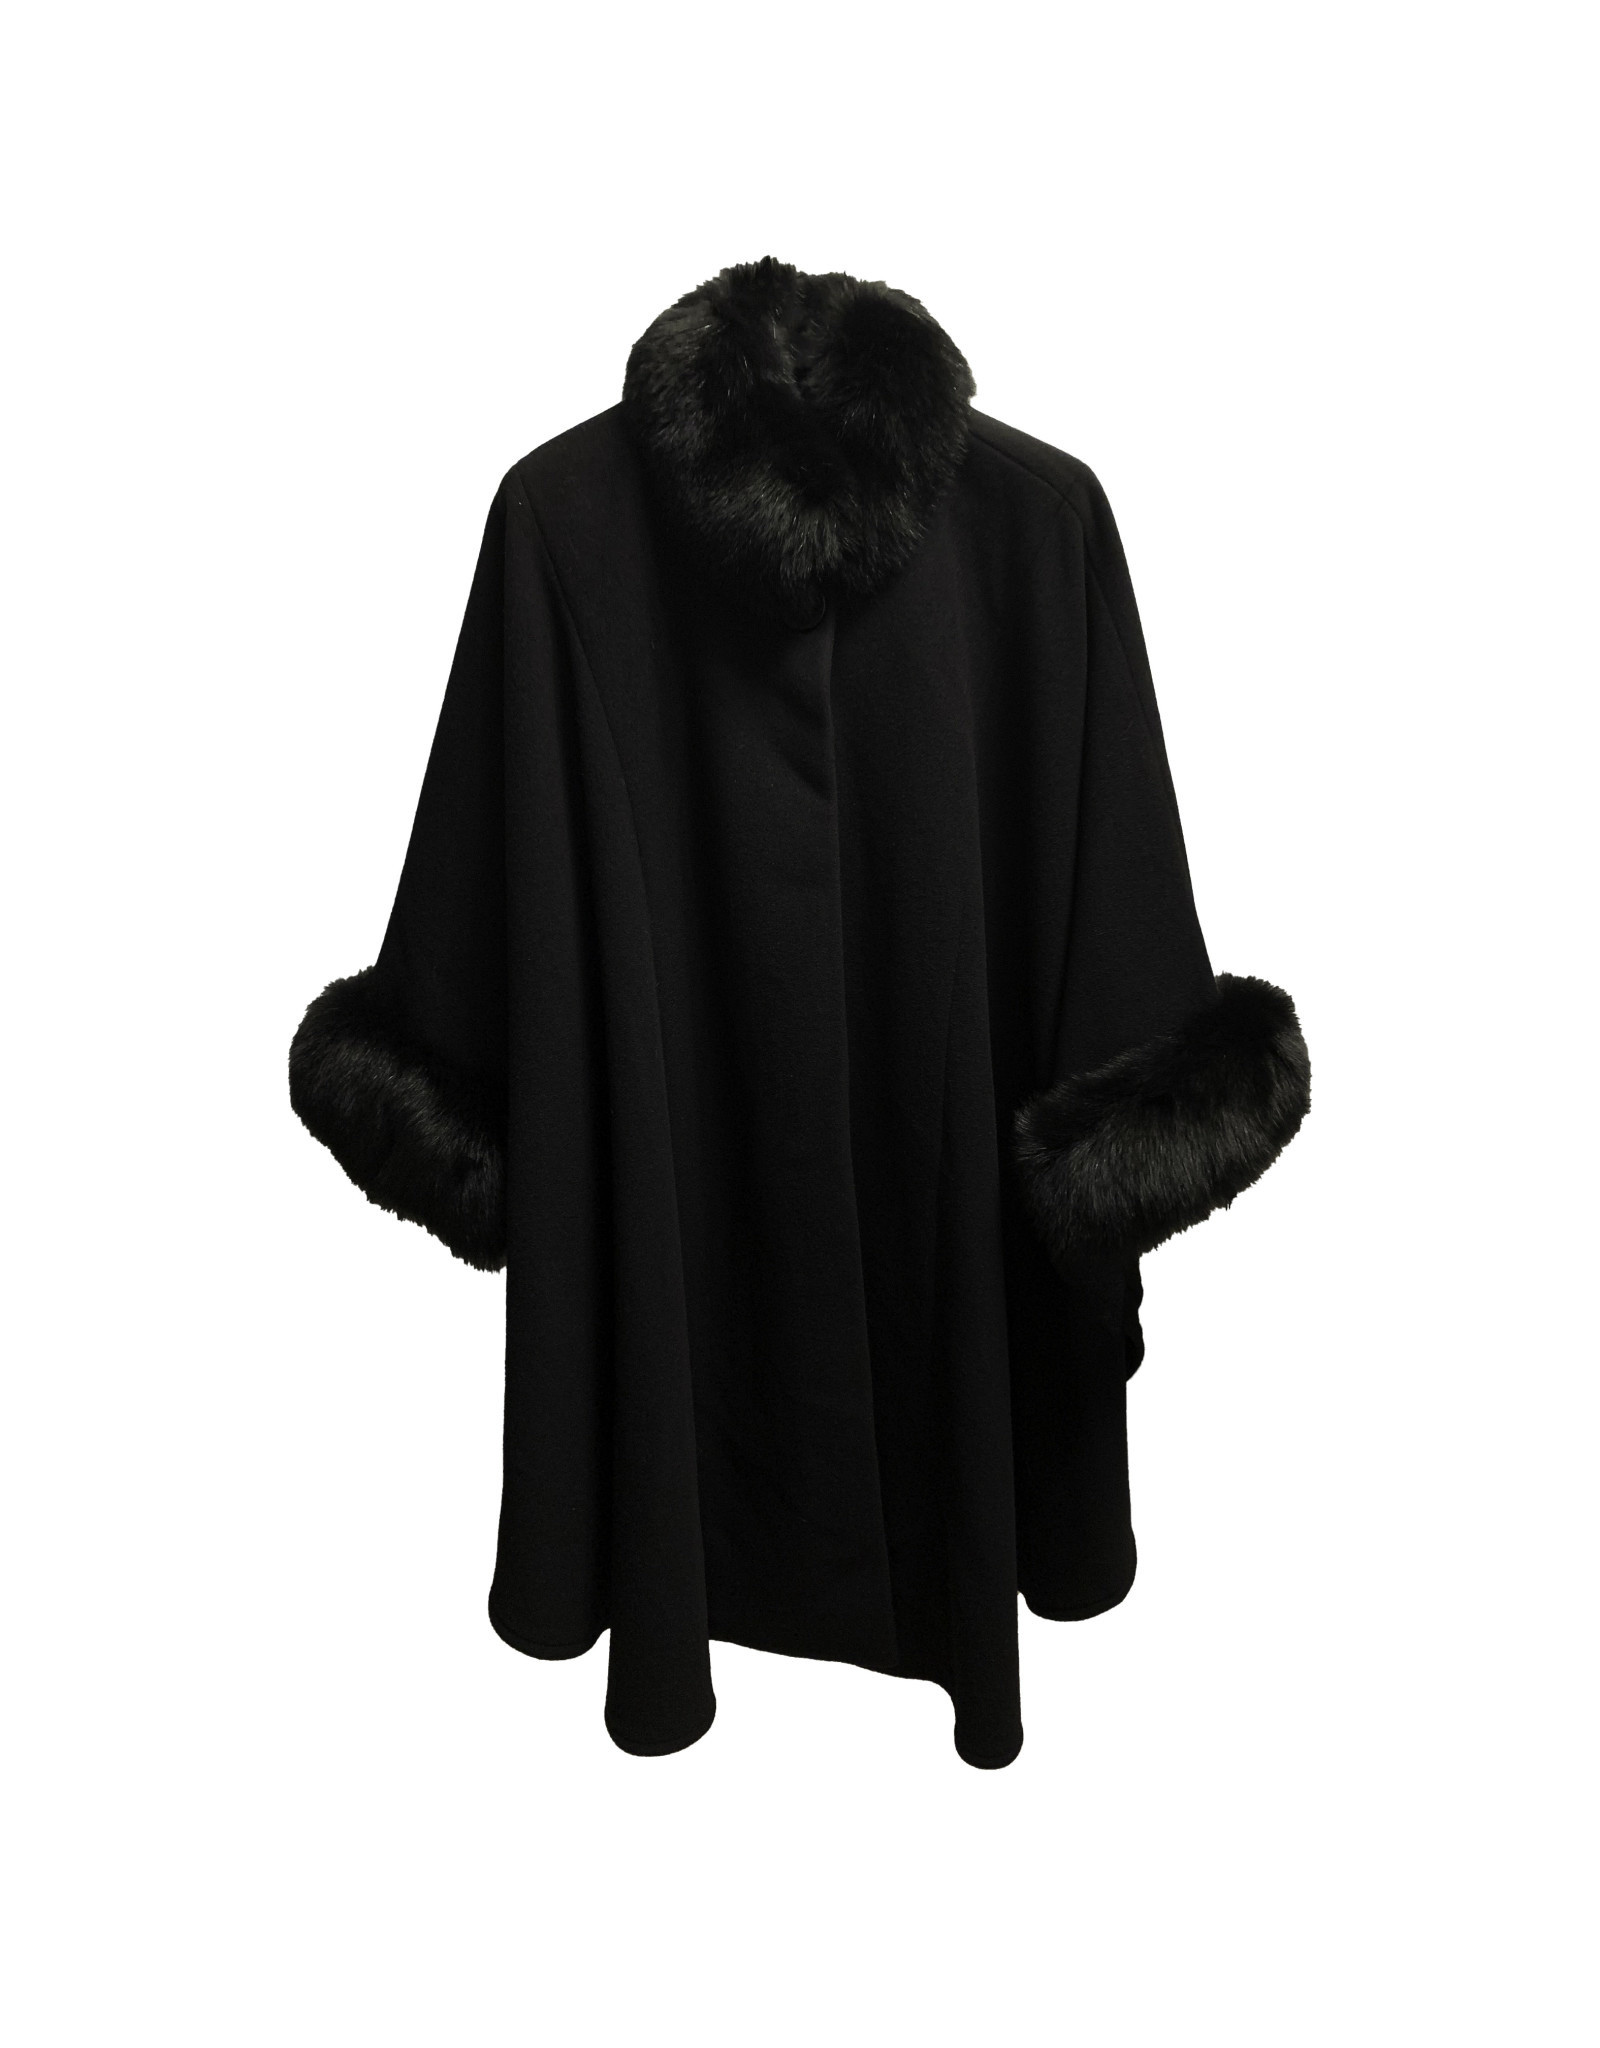 HiSO HiSO Fox Fur-Trimmed Coat Size